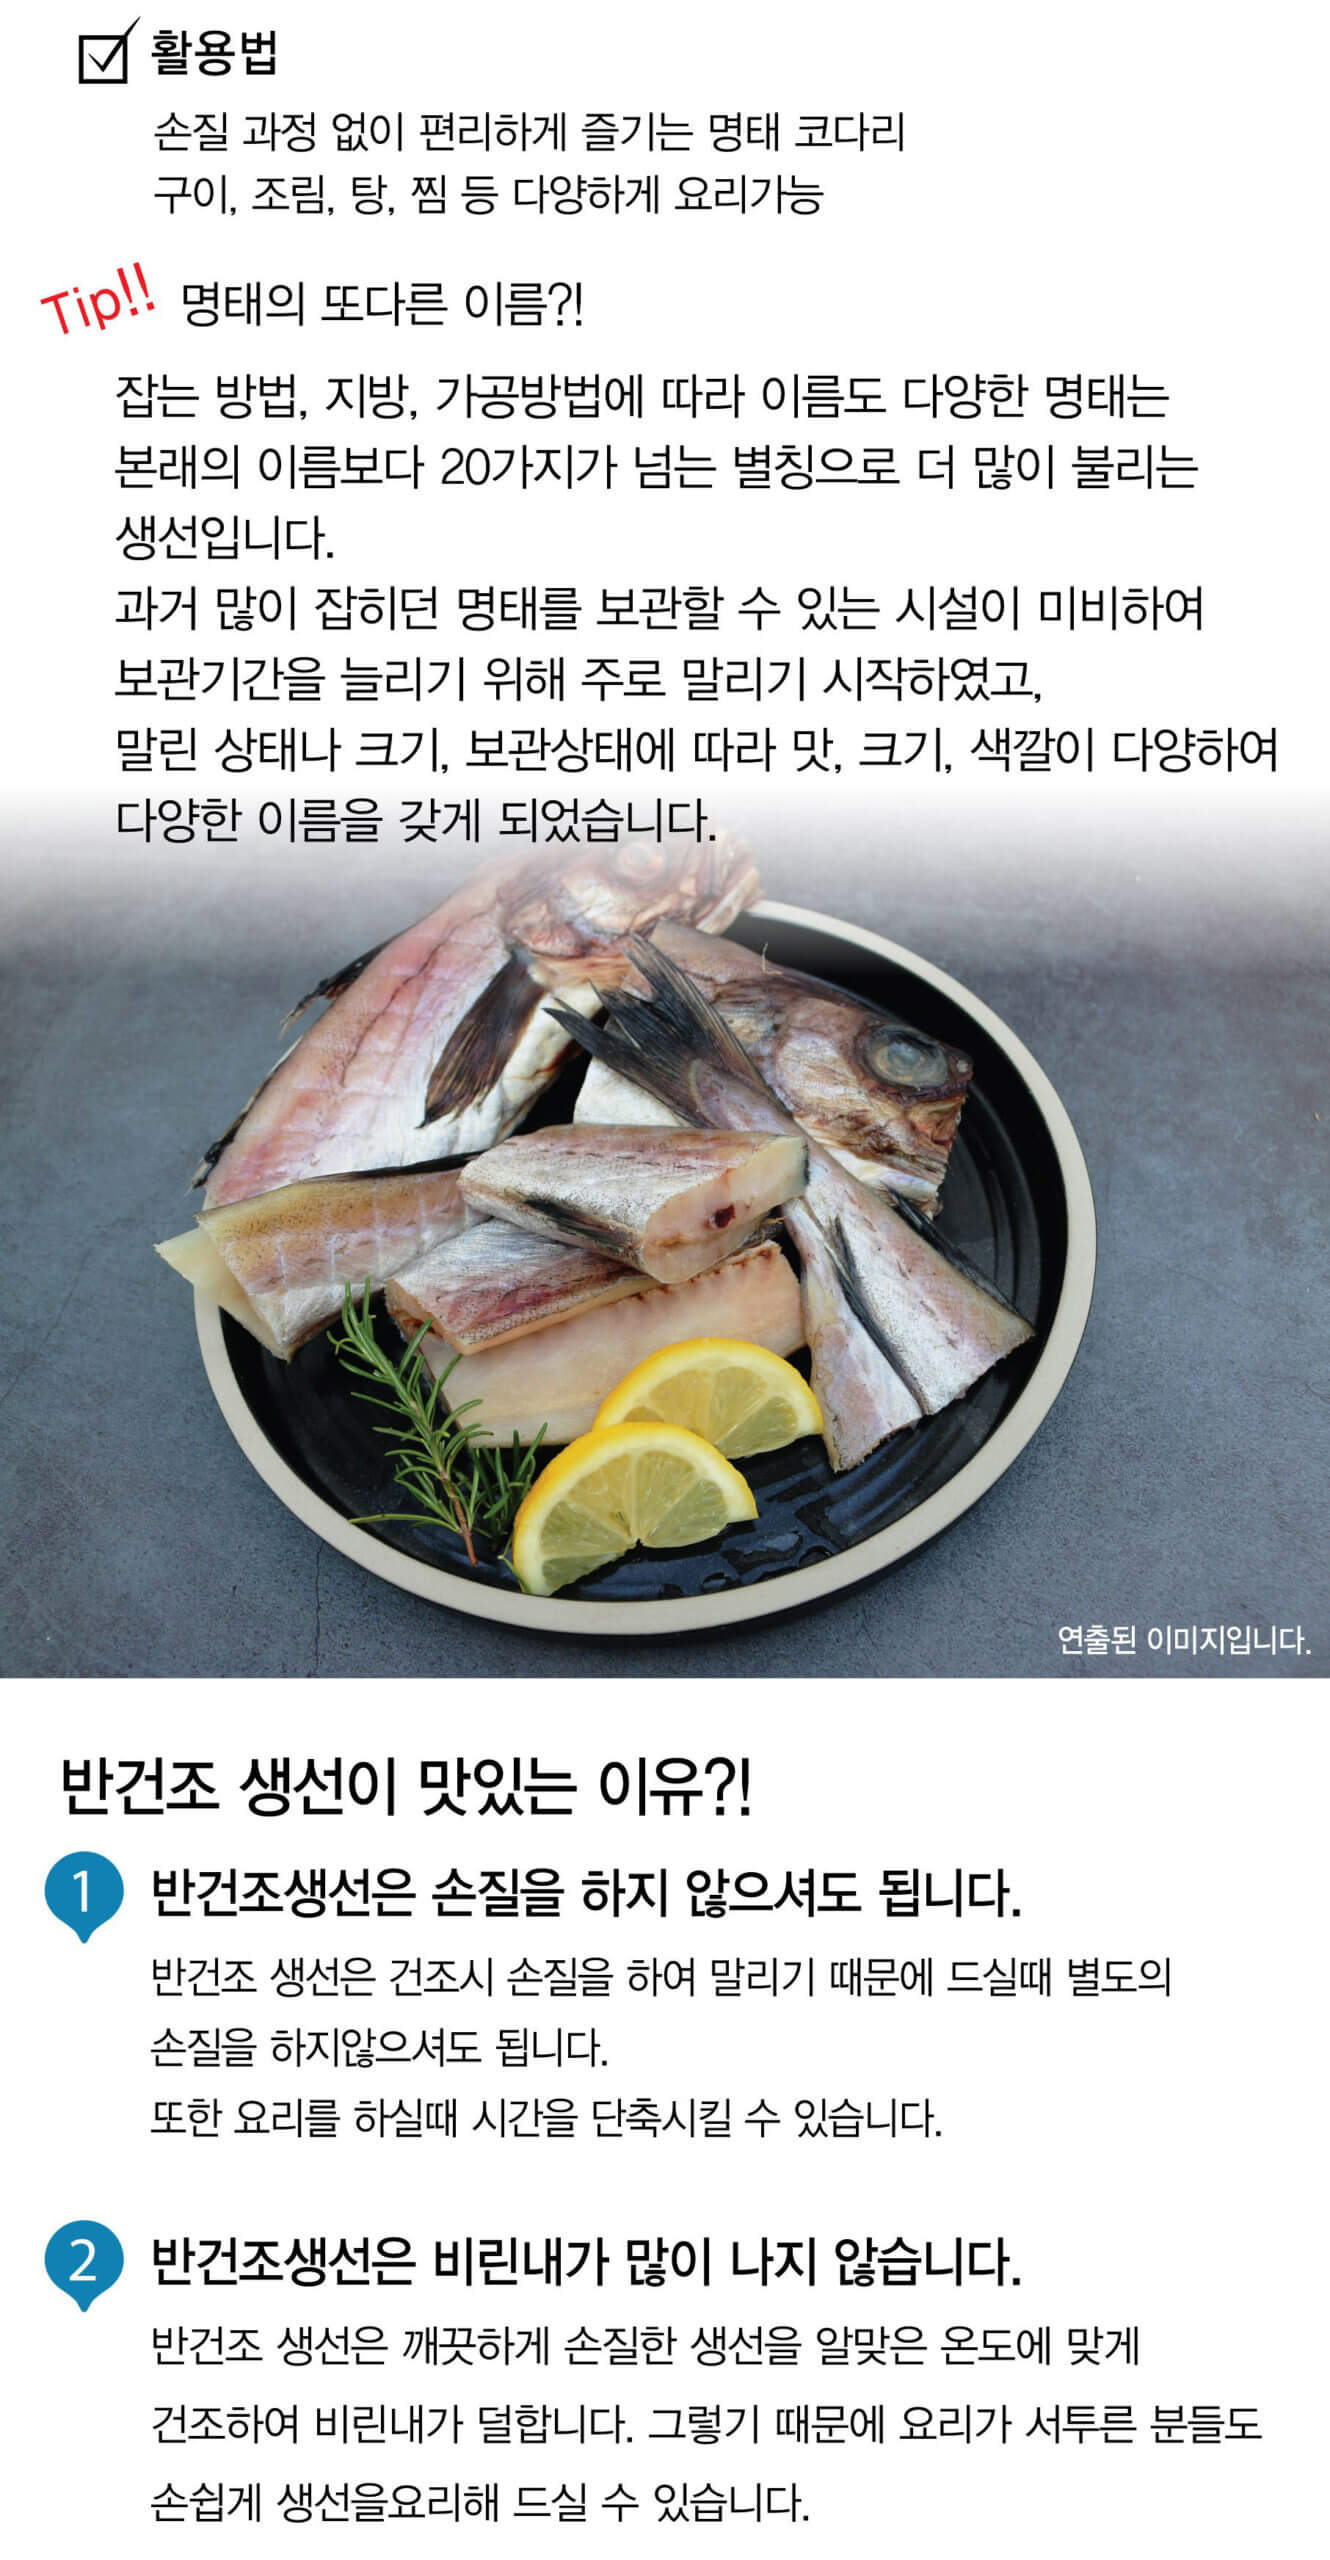 韓國食品-[프리미어] 손질 절단 코다리 1kg